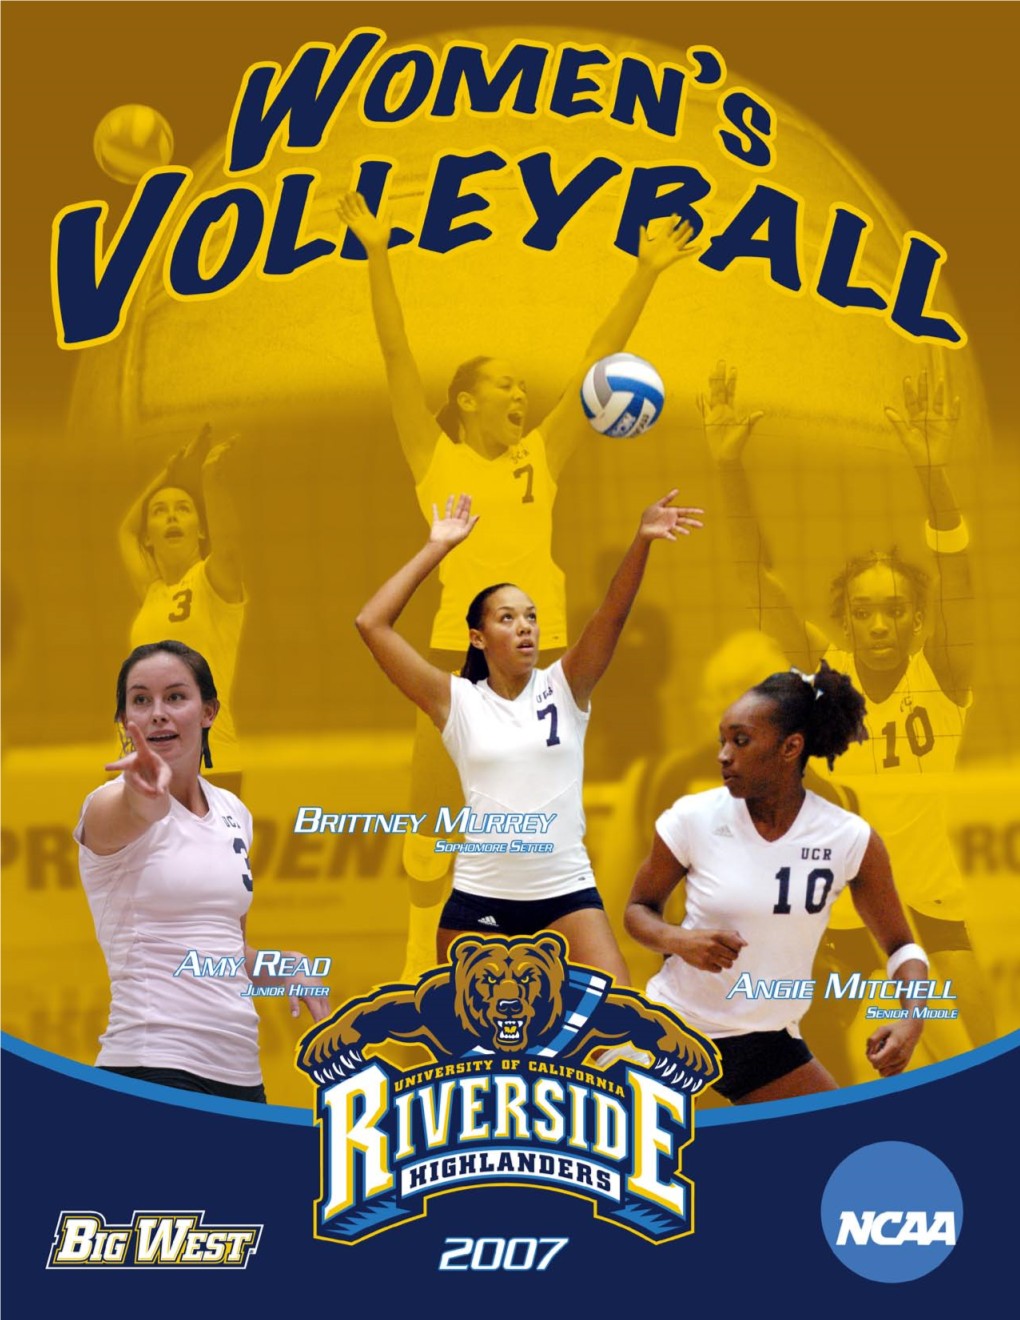 2007 UC Riverside Volleyball Schedule